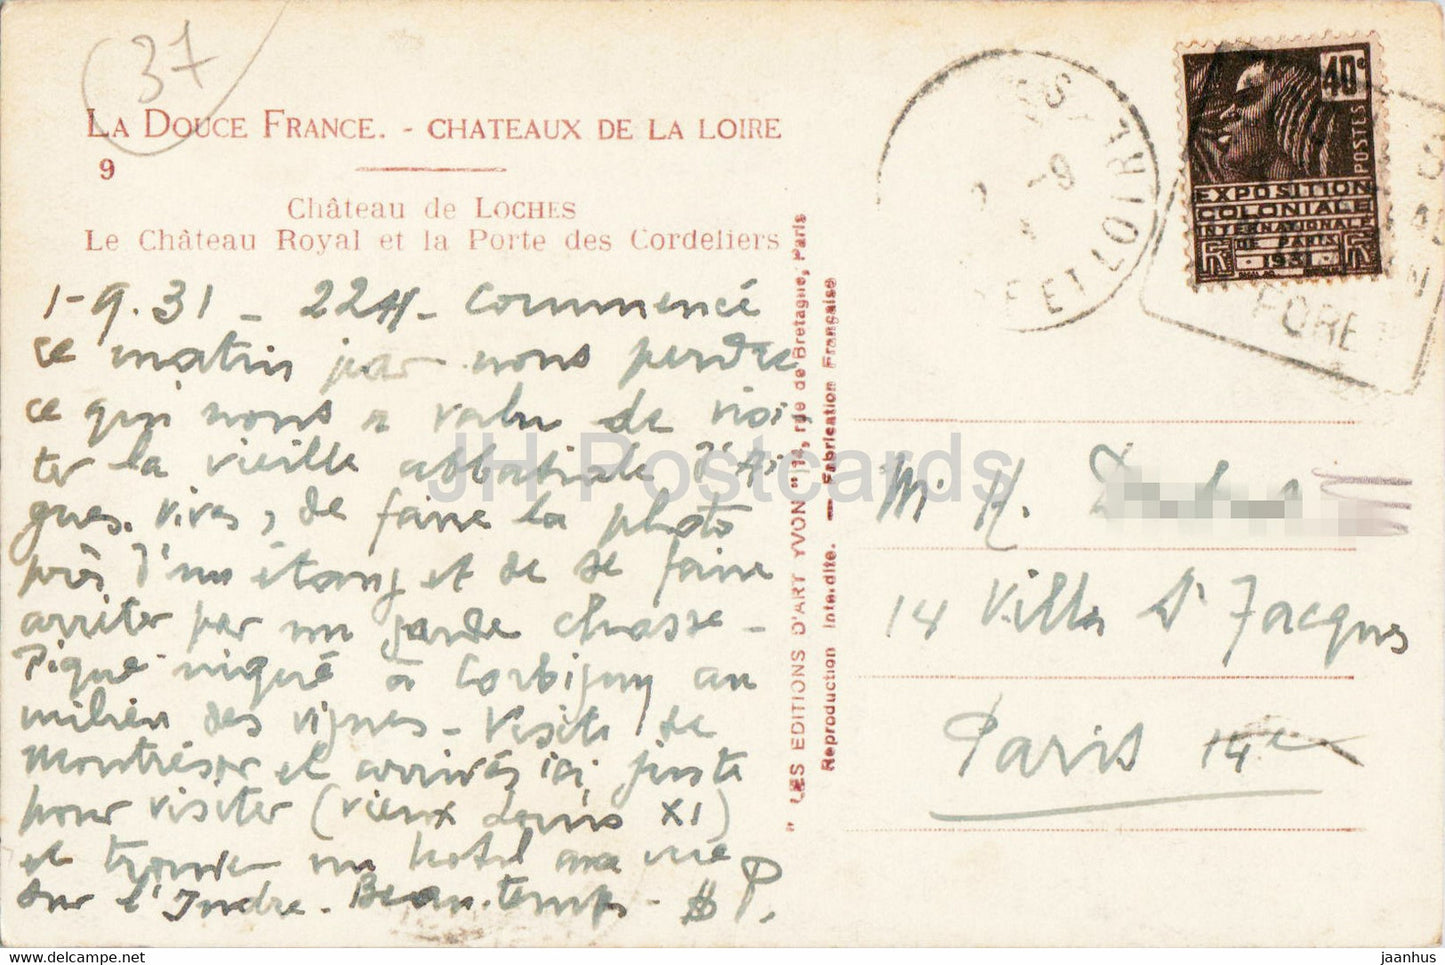 Château de Loches - Le Château Royal et la Porte des Cordeliers - 9 - carte postale ancienne - 1931 - France - utilisé